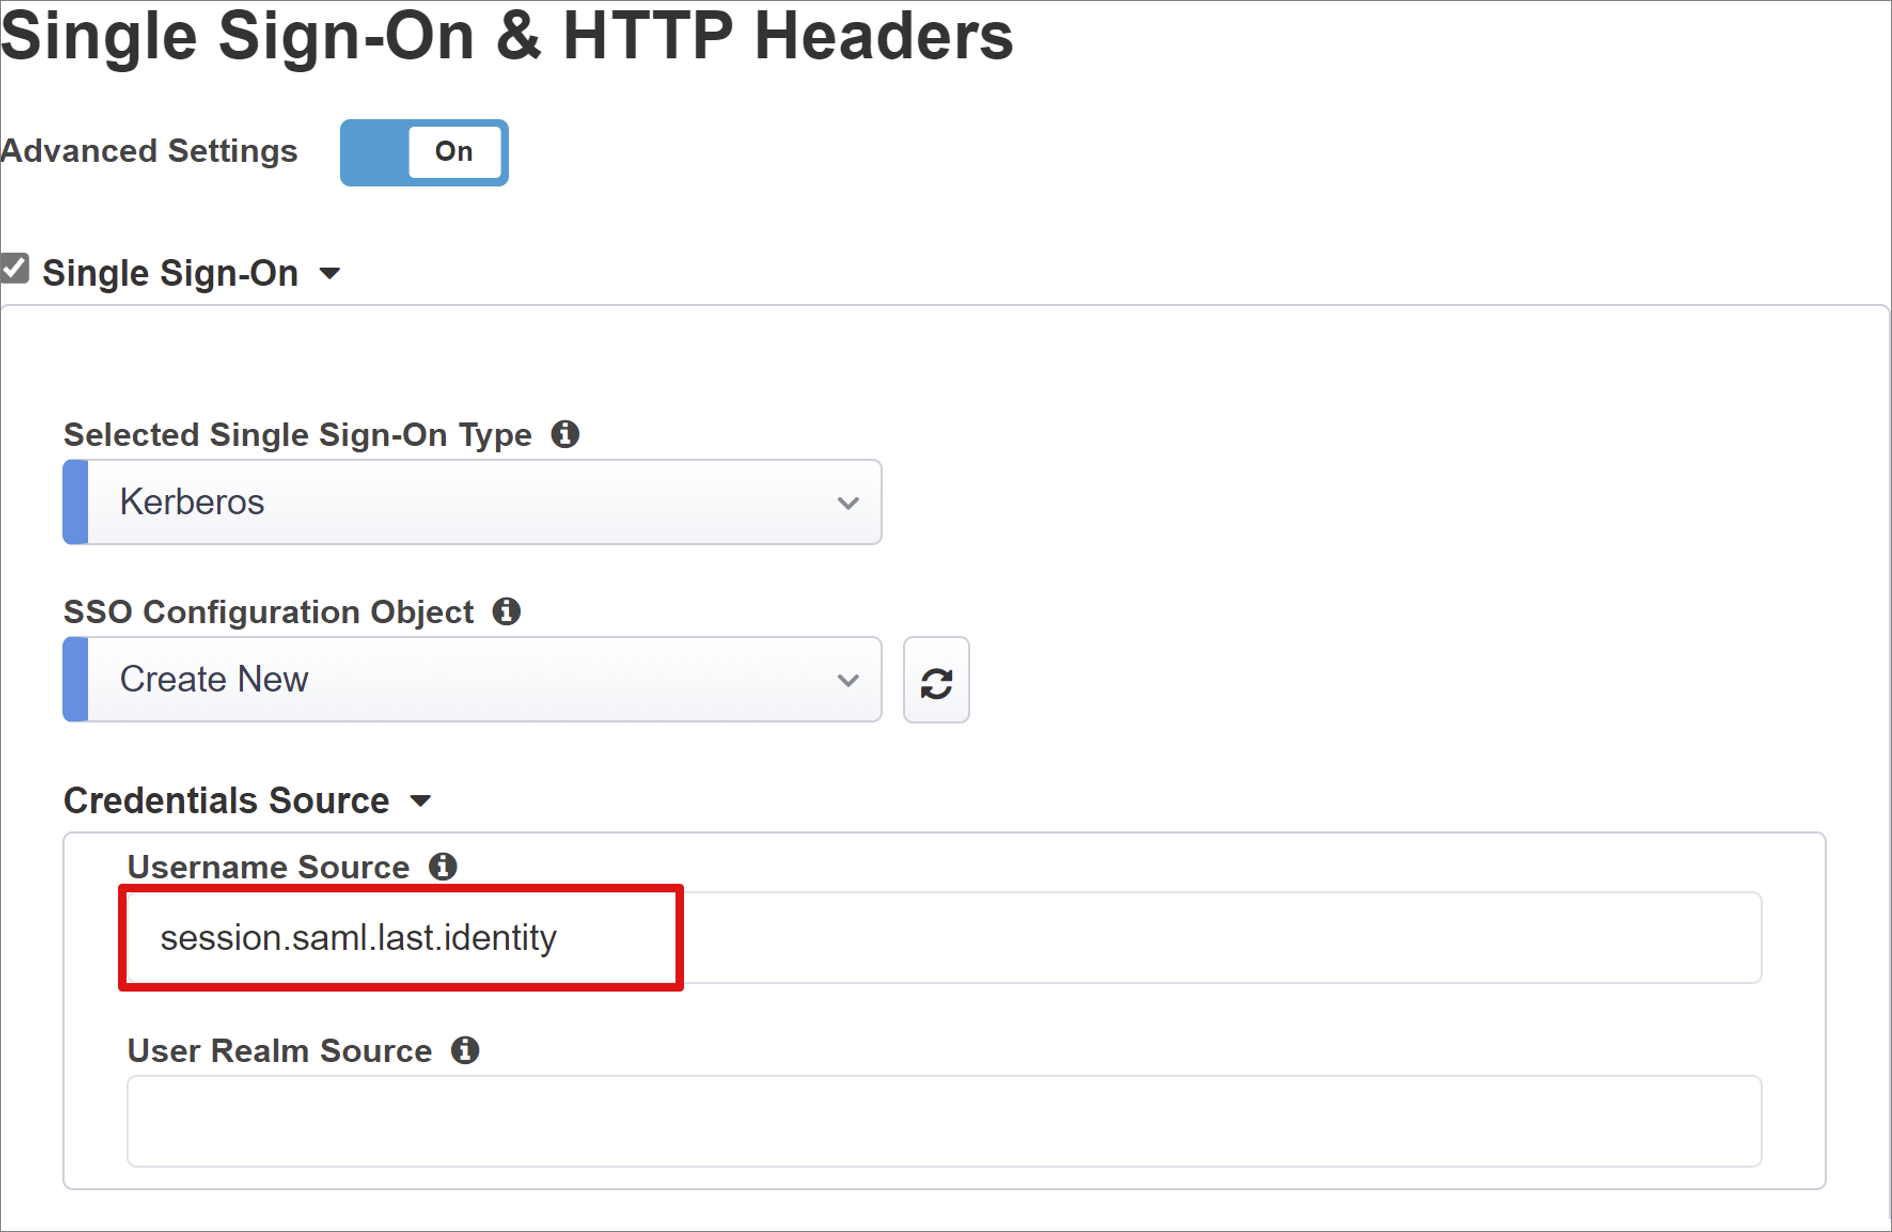 Captura de tela de opções e seleções para Single Sign-On & HTTP Headers.